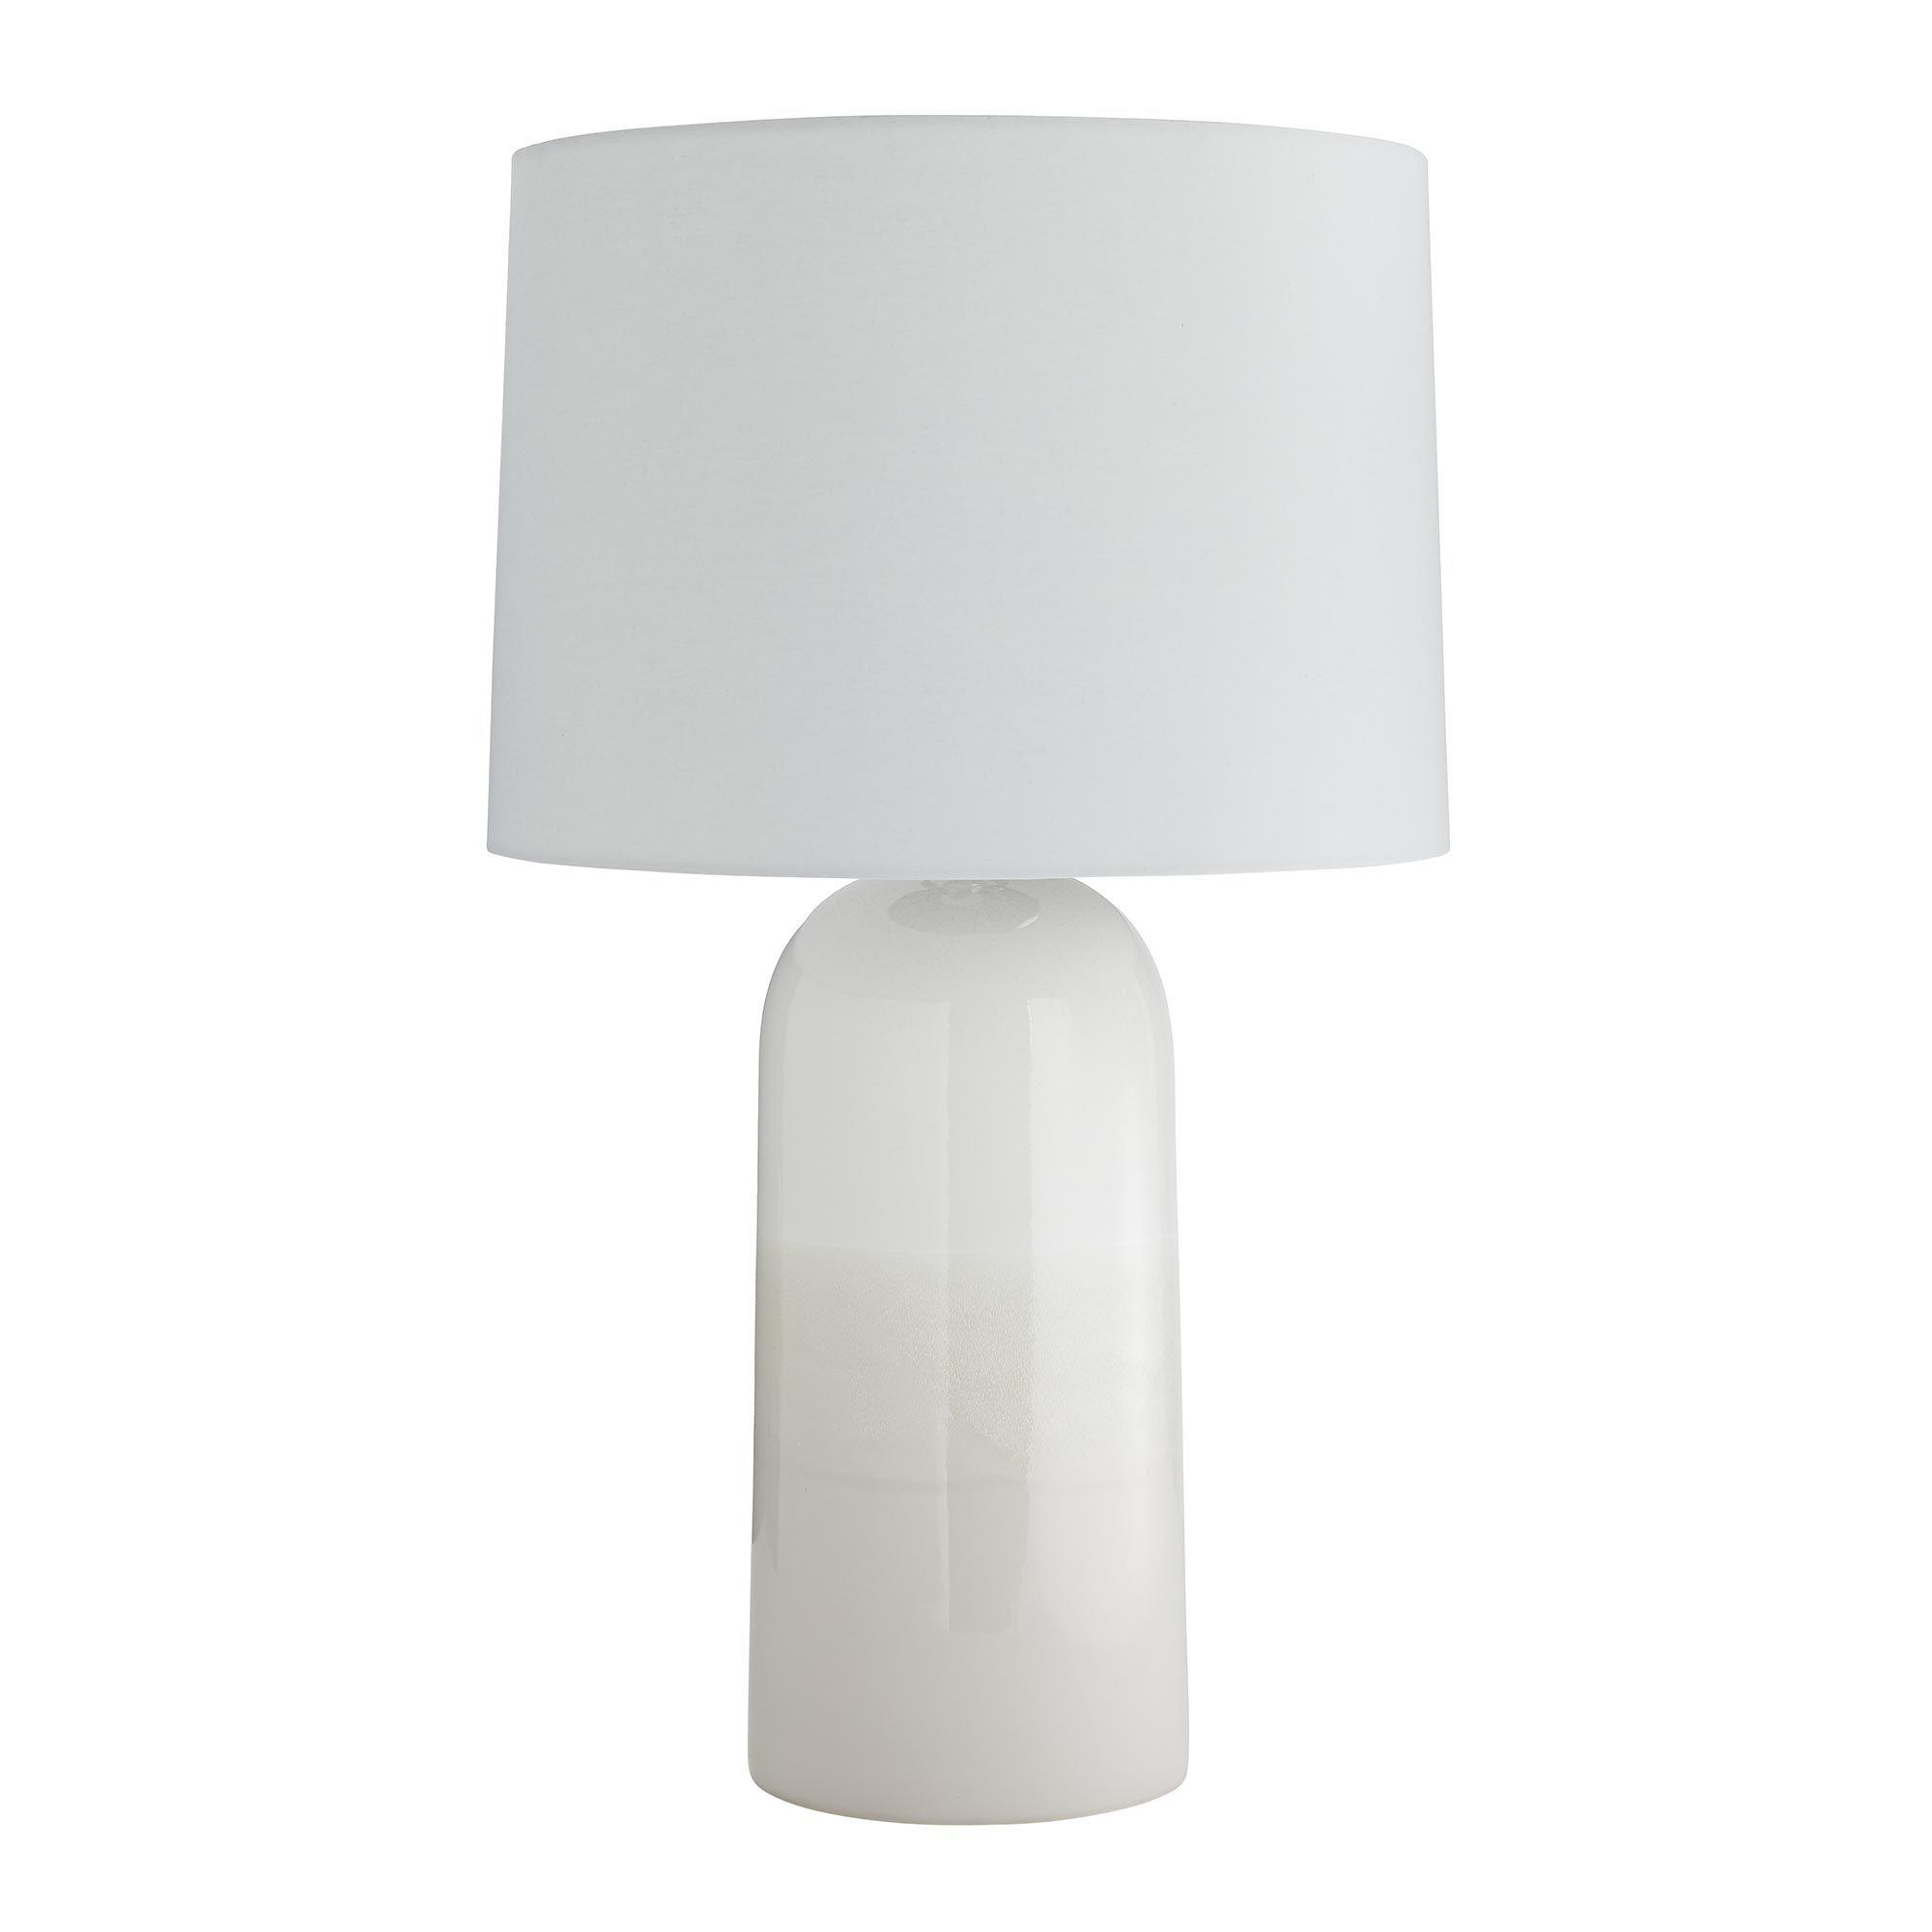 Купить Настольная лампа Serena Lamp в интернет-магазине roooms.ru